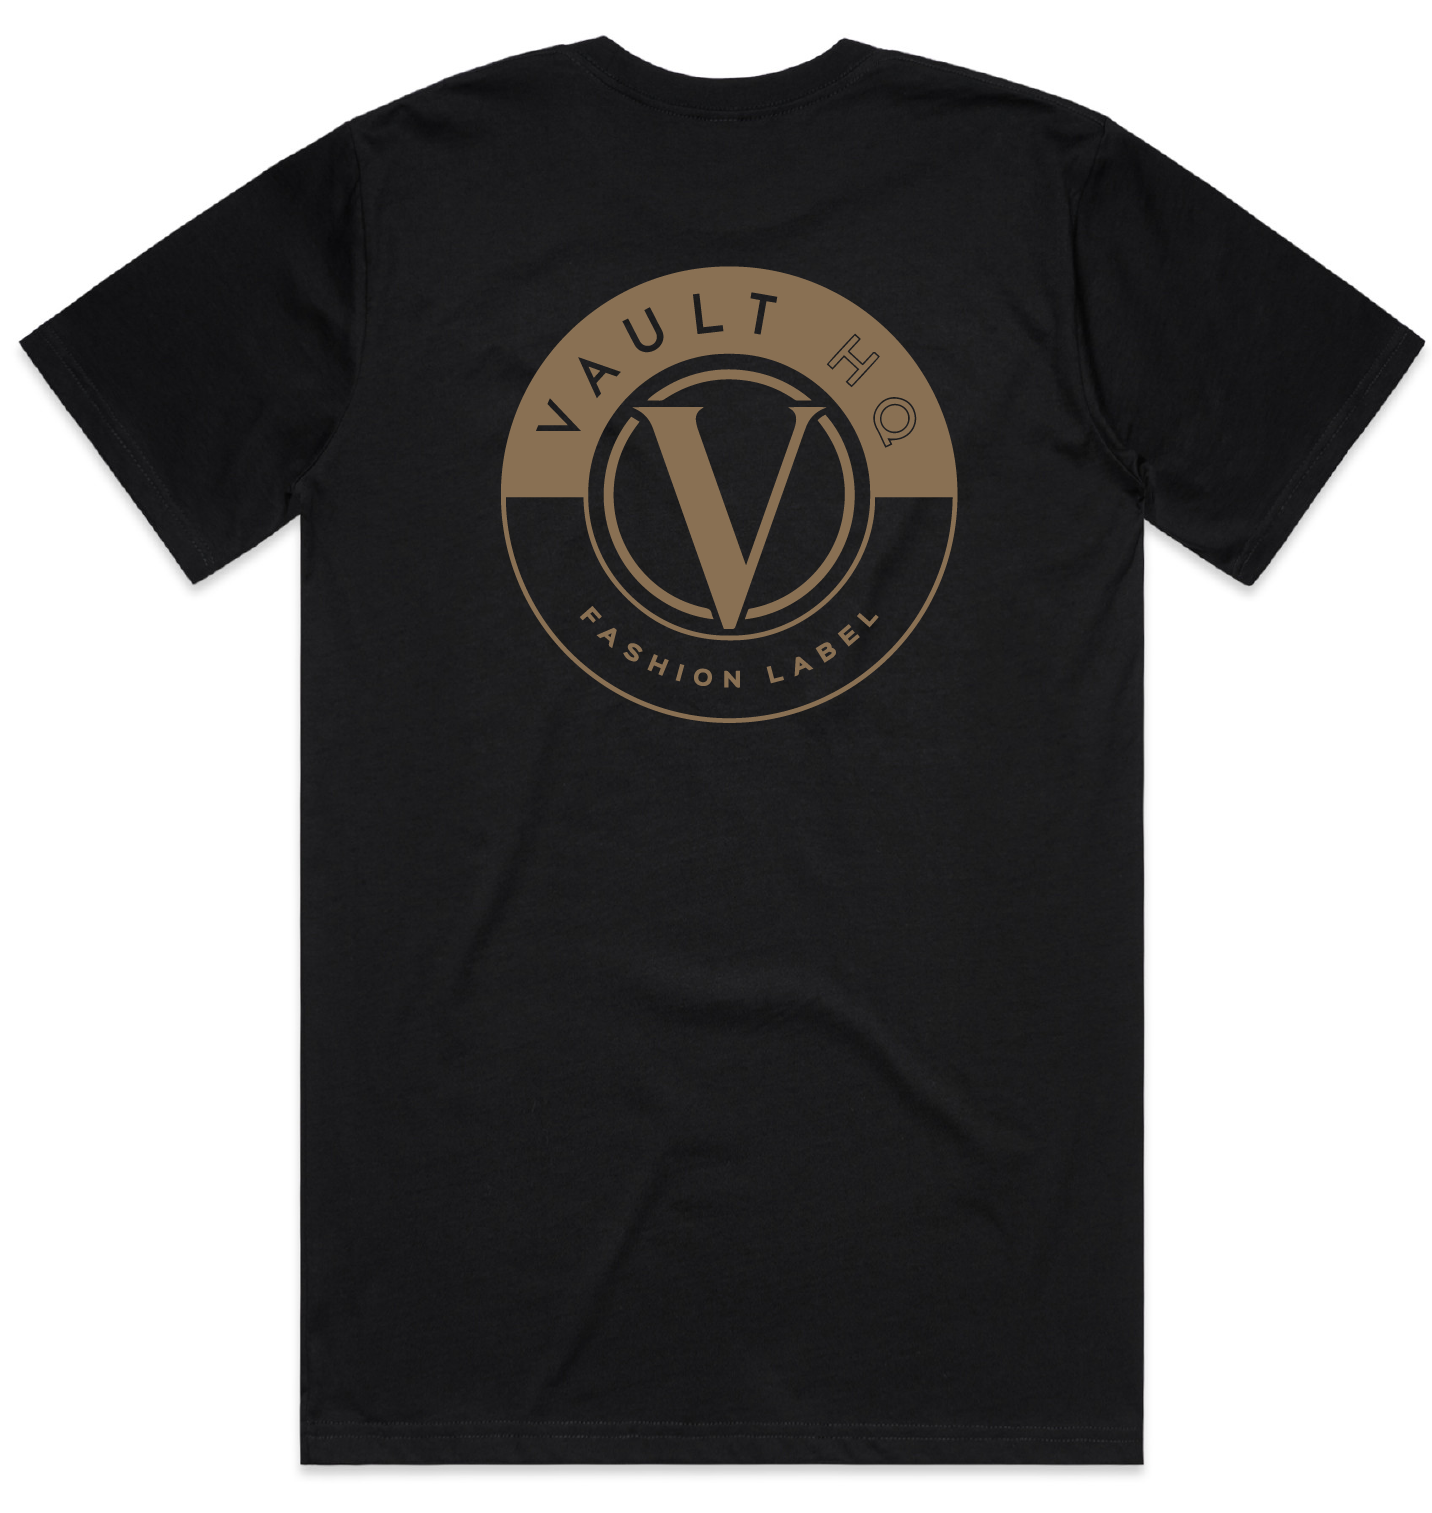 Vault Classic Men's T-shirt - Black